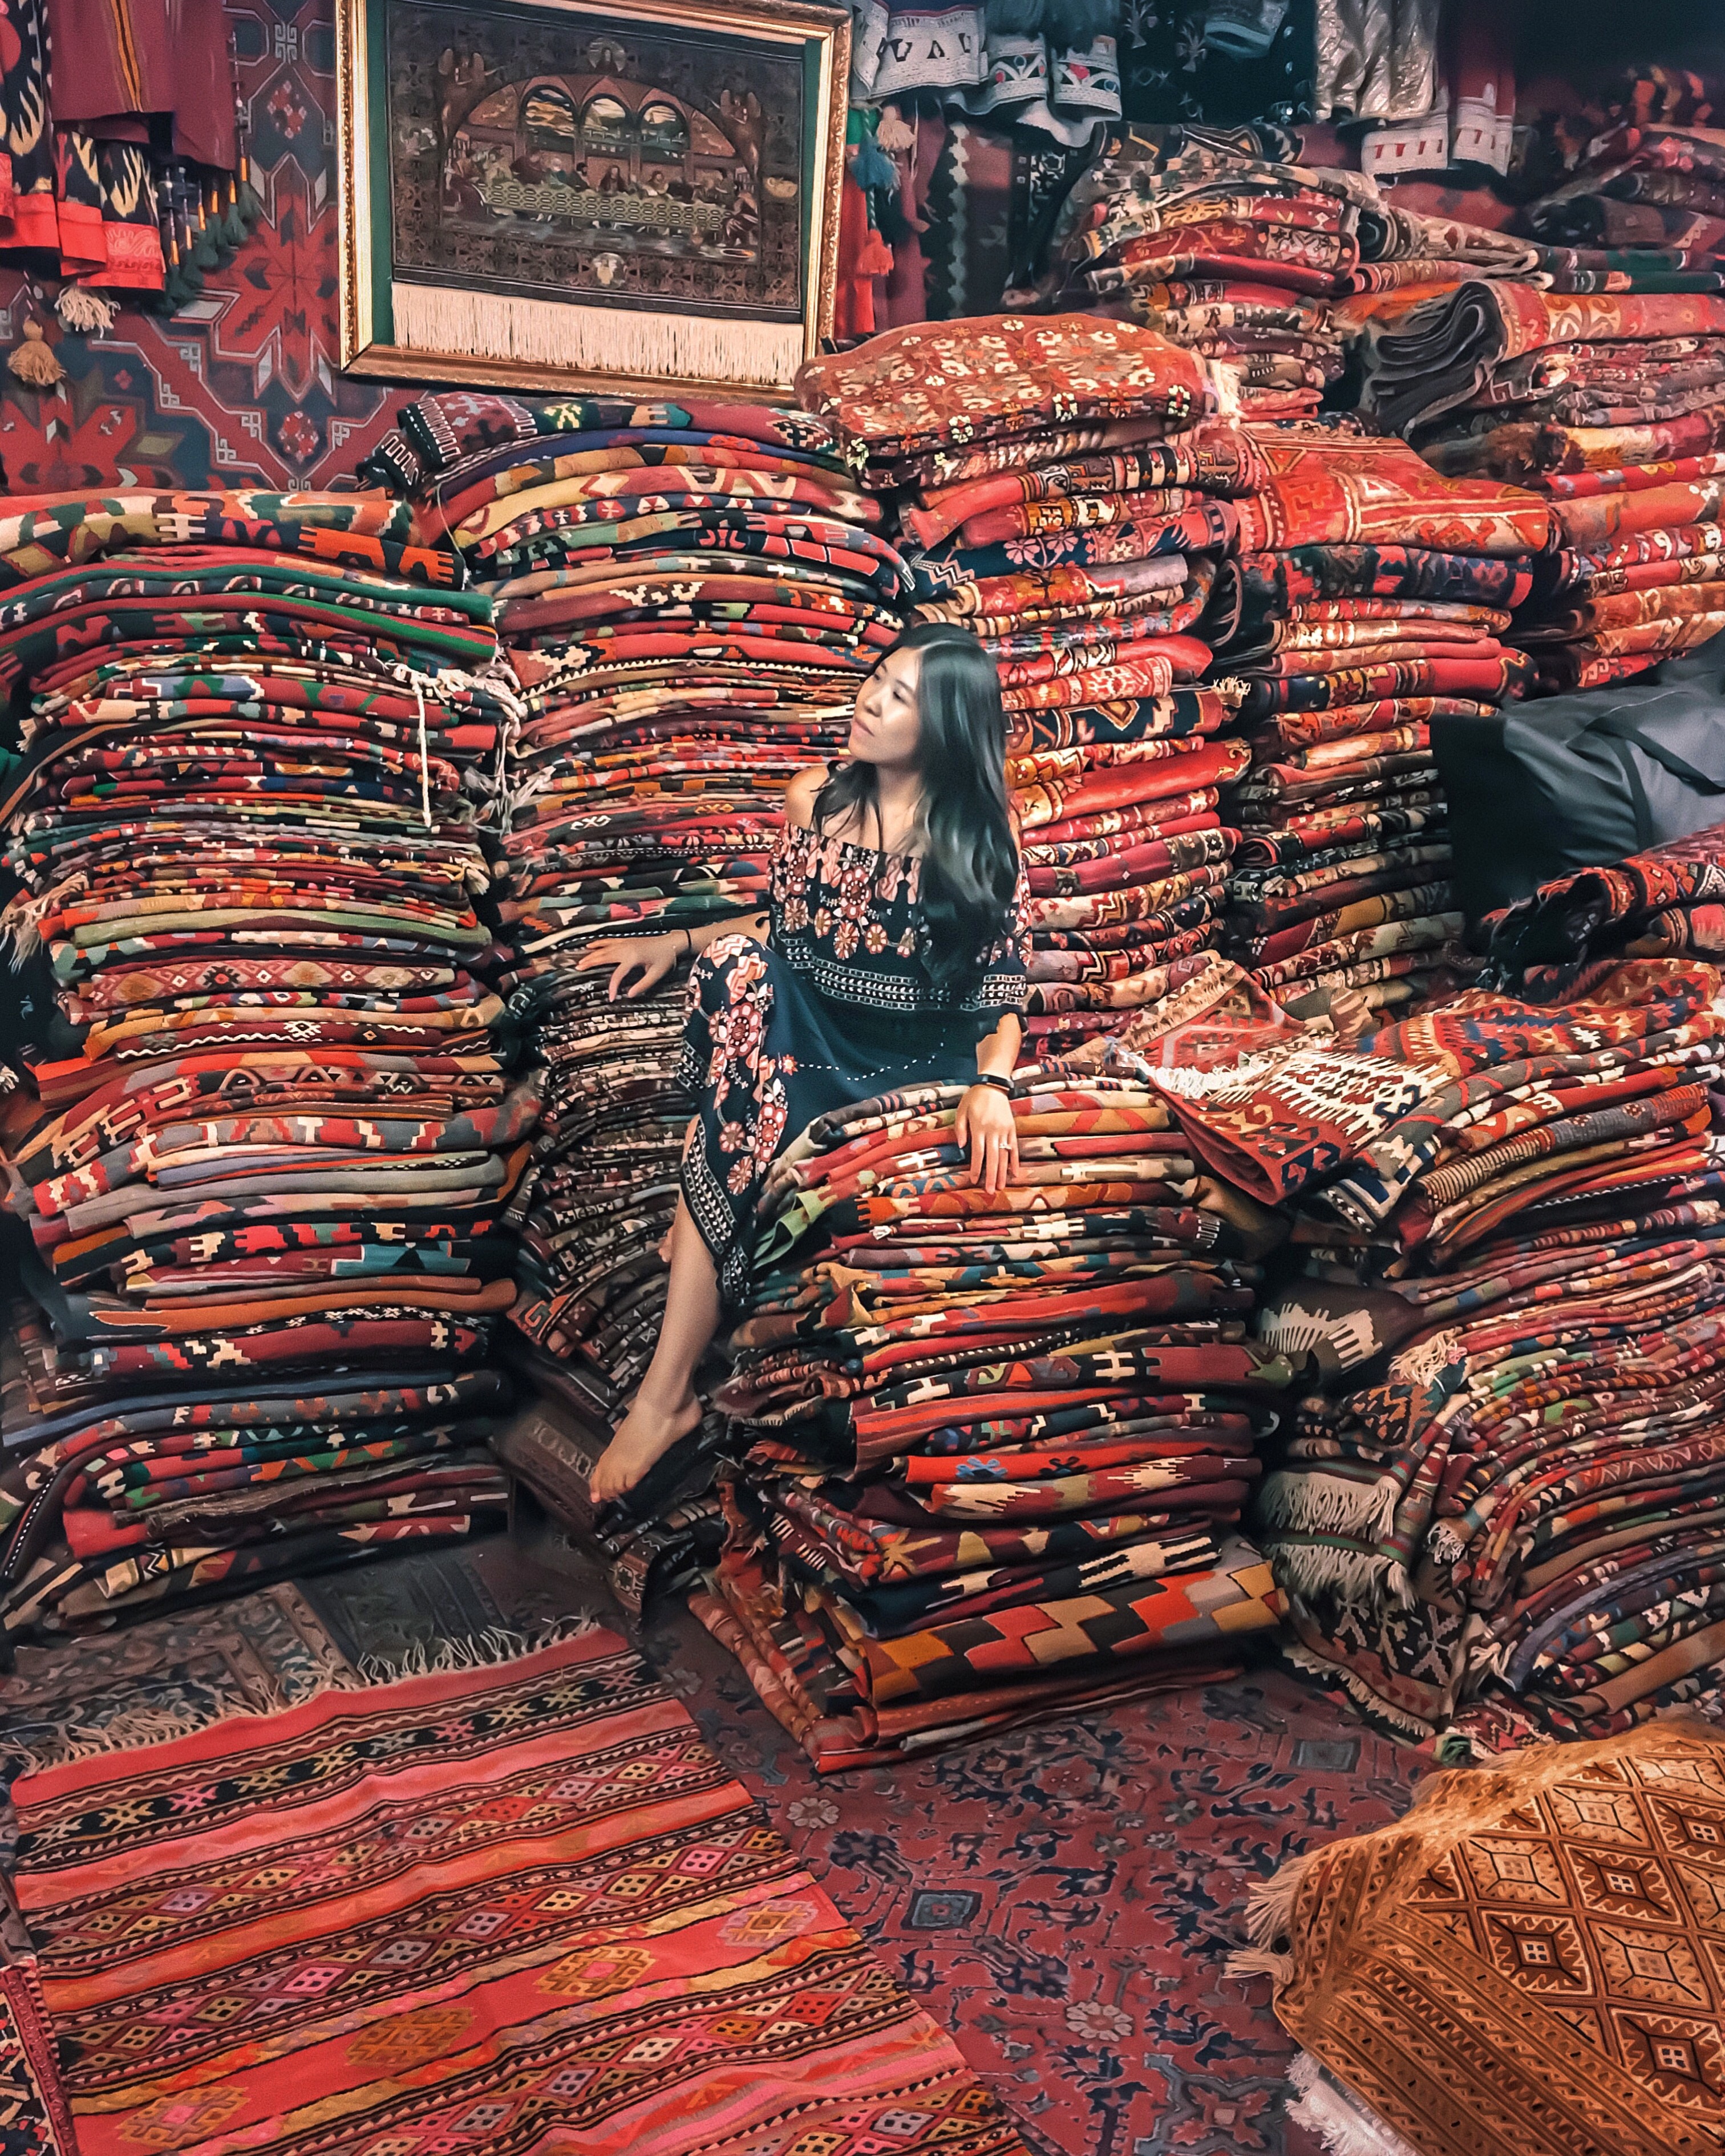 Turkish rug shopping